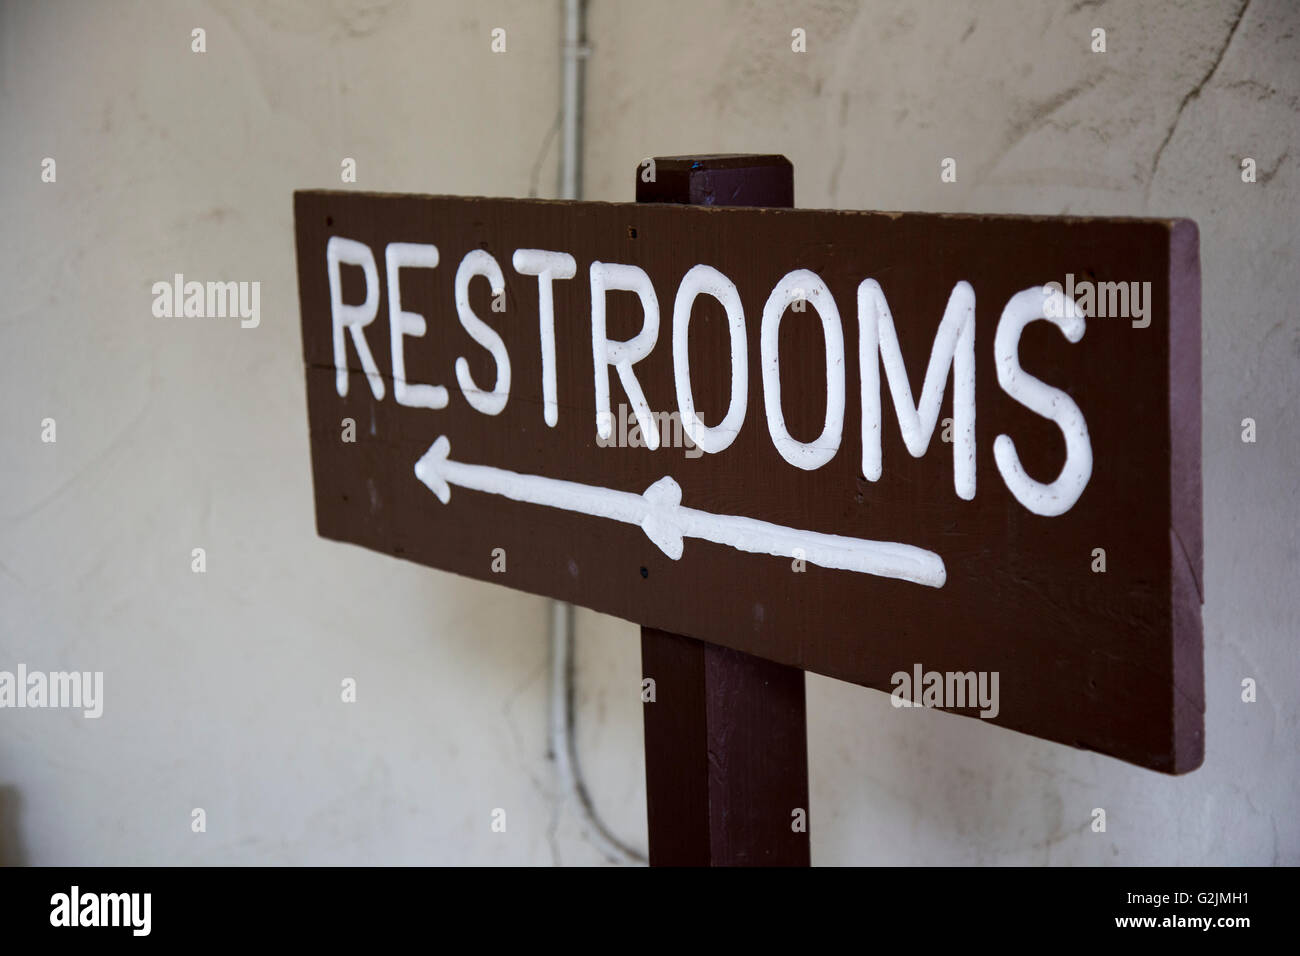 La direction de la signalisation pour les toilettes, salles de bains, wc Banque D'Images